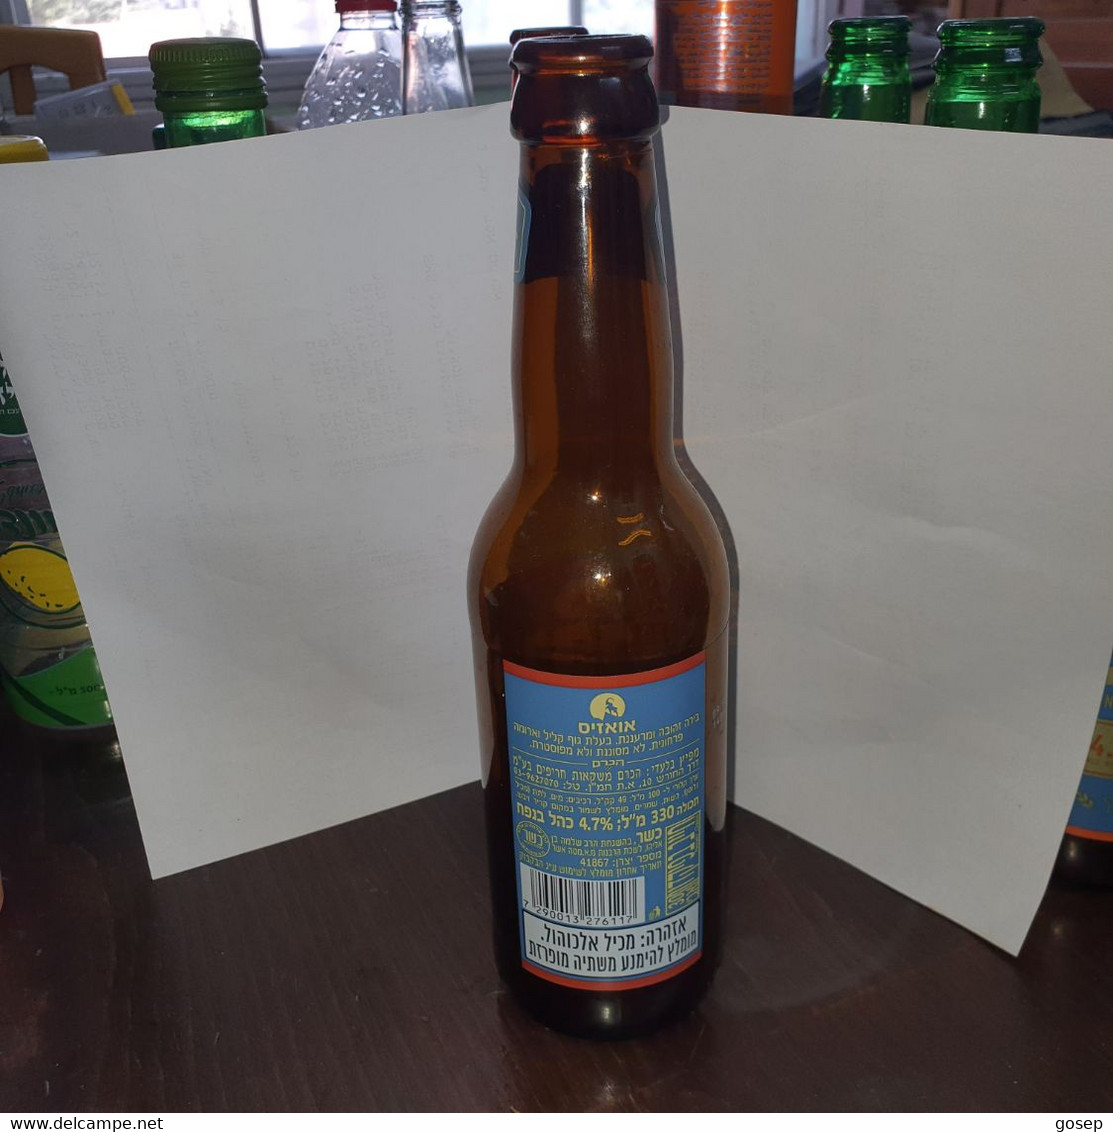 Israel-beer Bottle-negev Craft Beer-oasis-(4.7%)-(330ml) - Bier